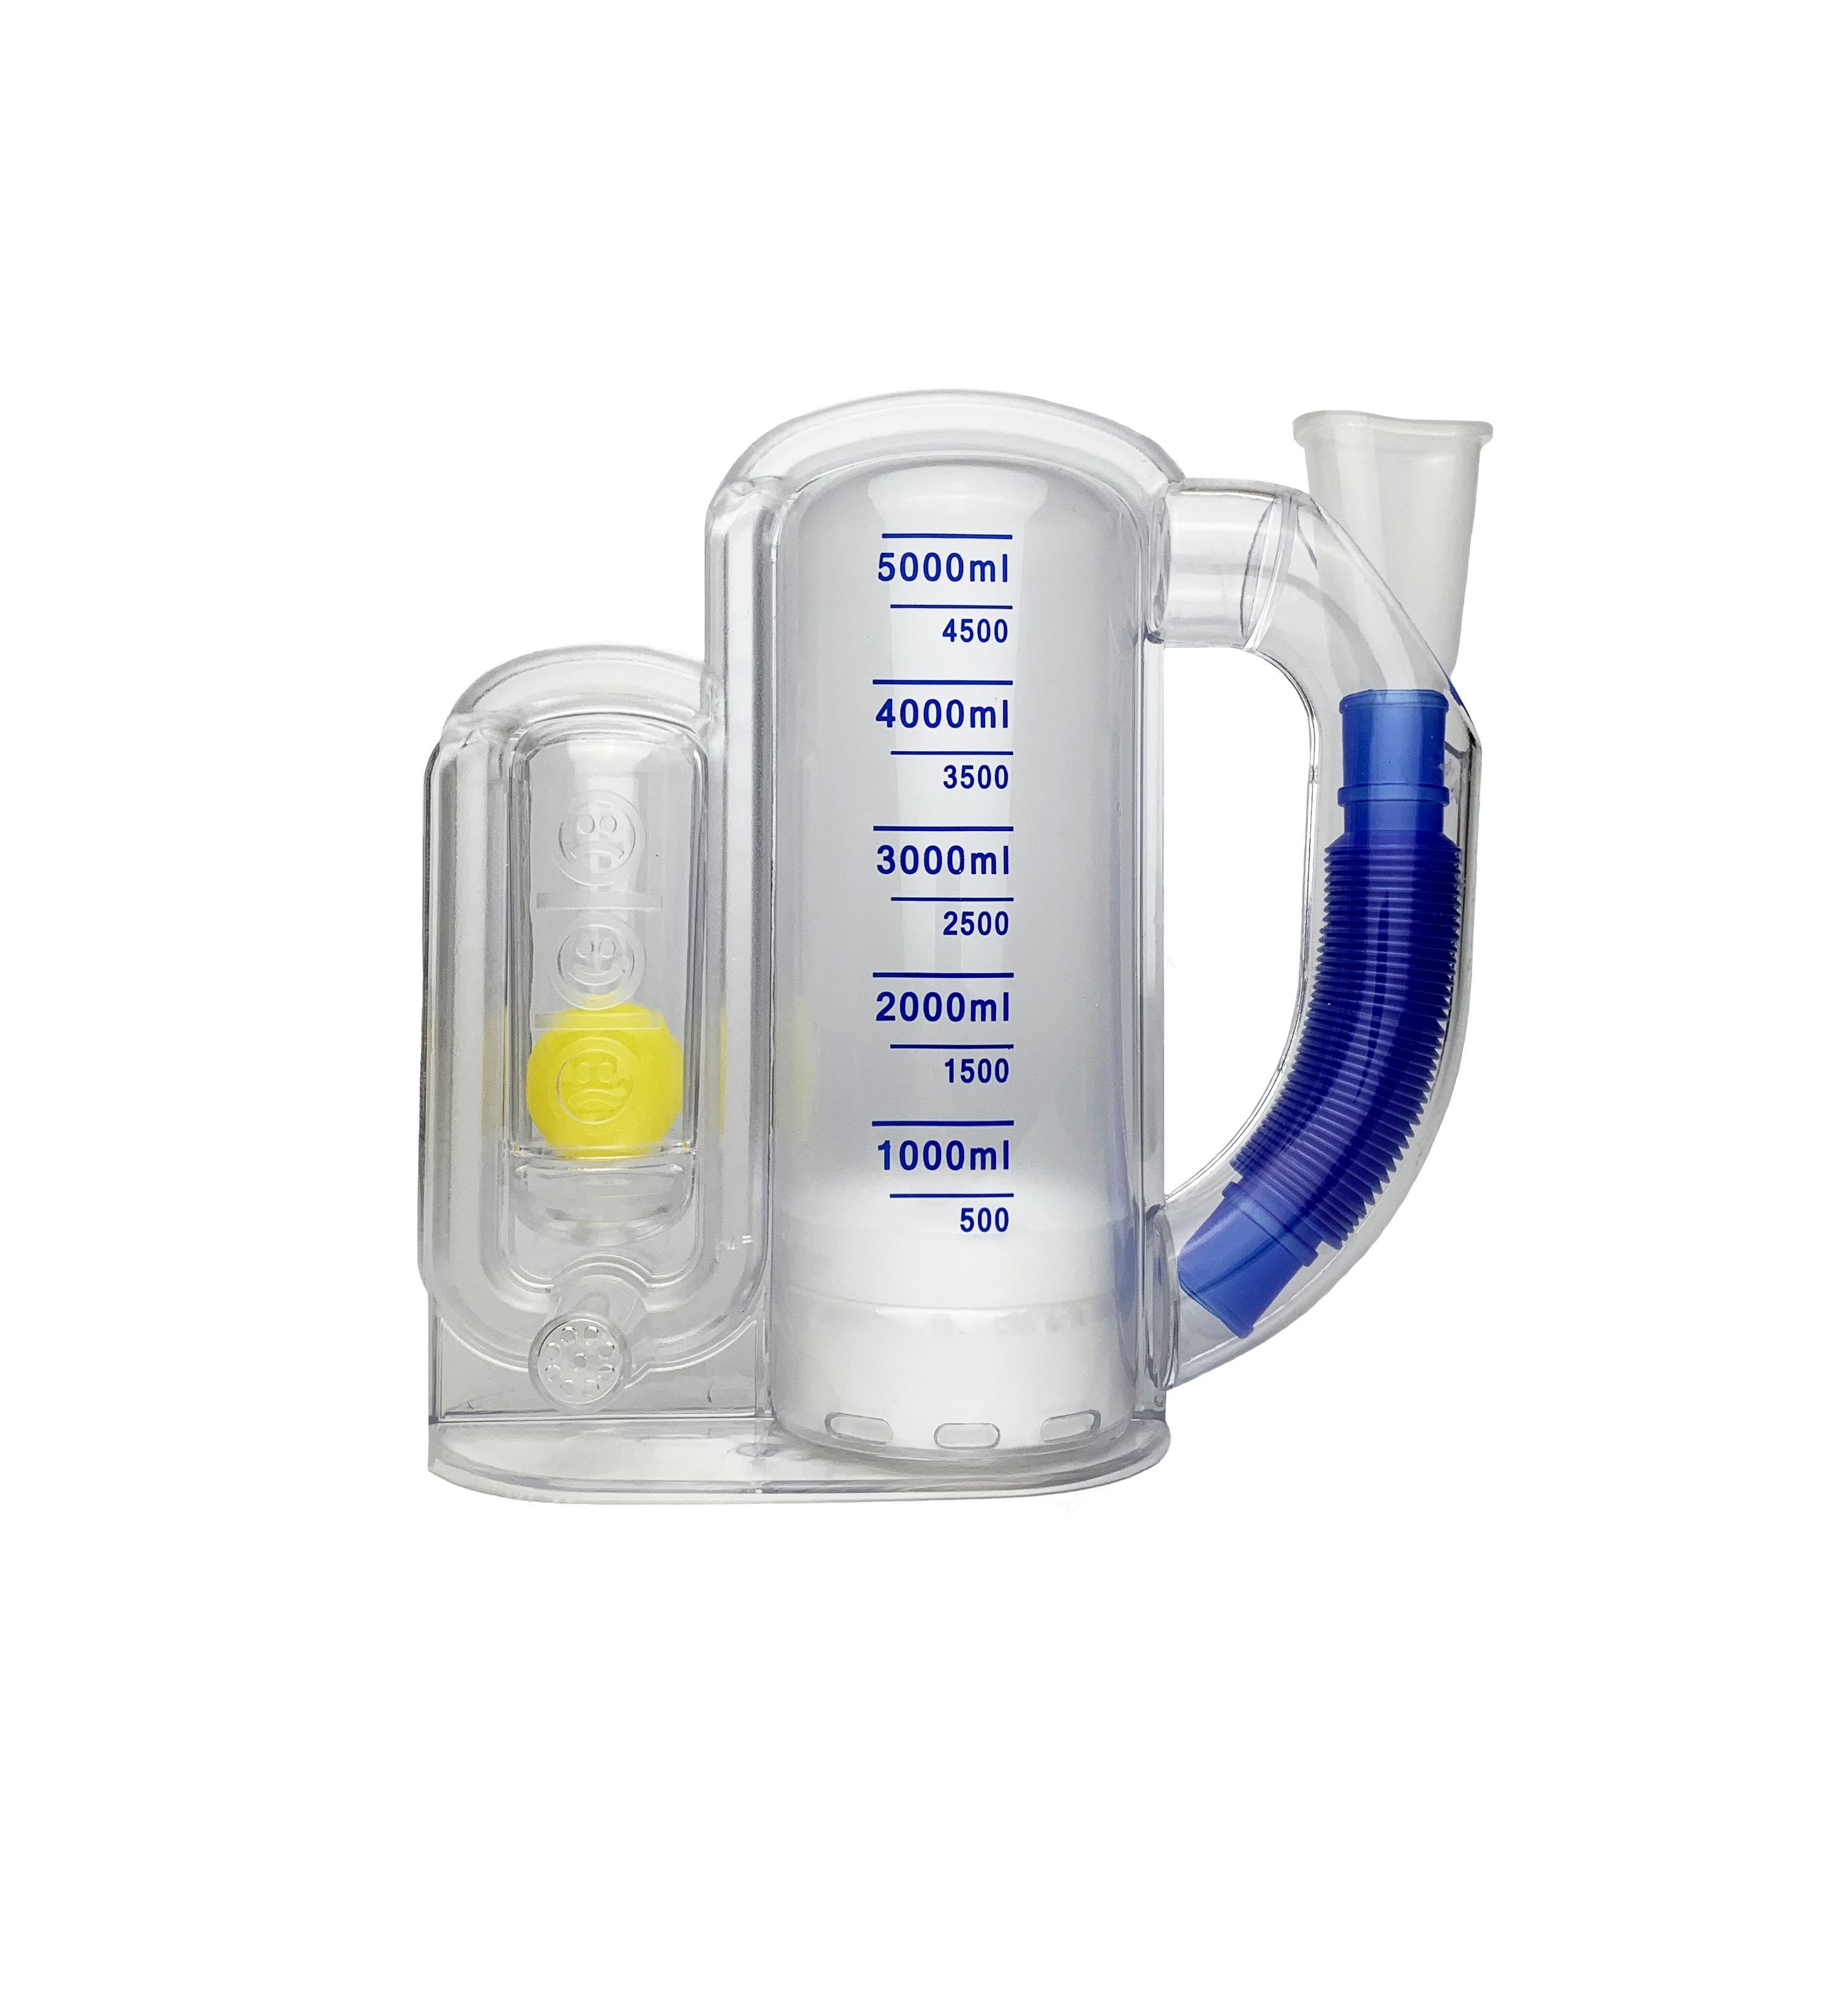 呼吸训练器医疗器械_呼吸训练器使用说明相关-成都新澳冠医疗器械公司